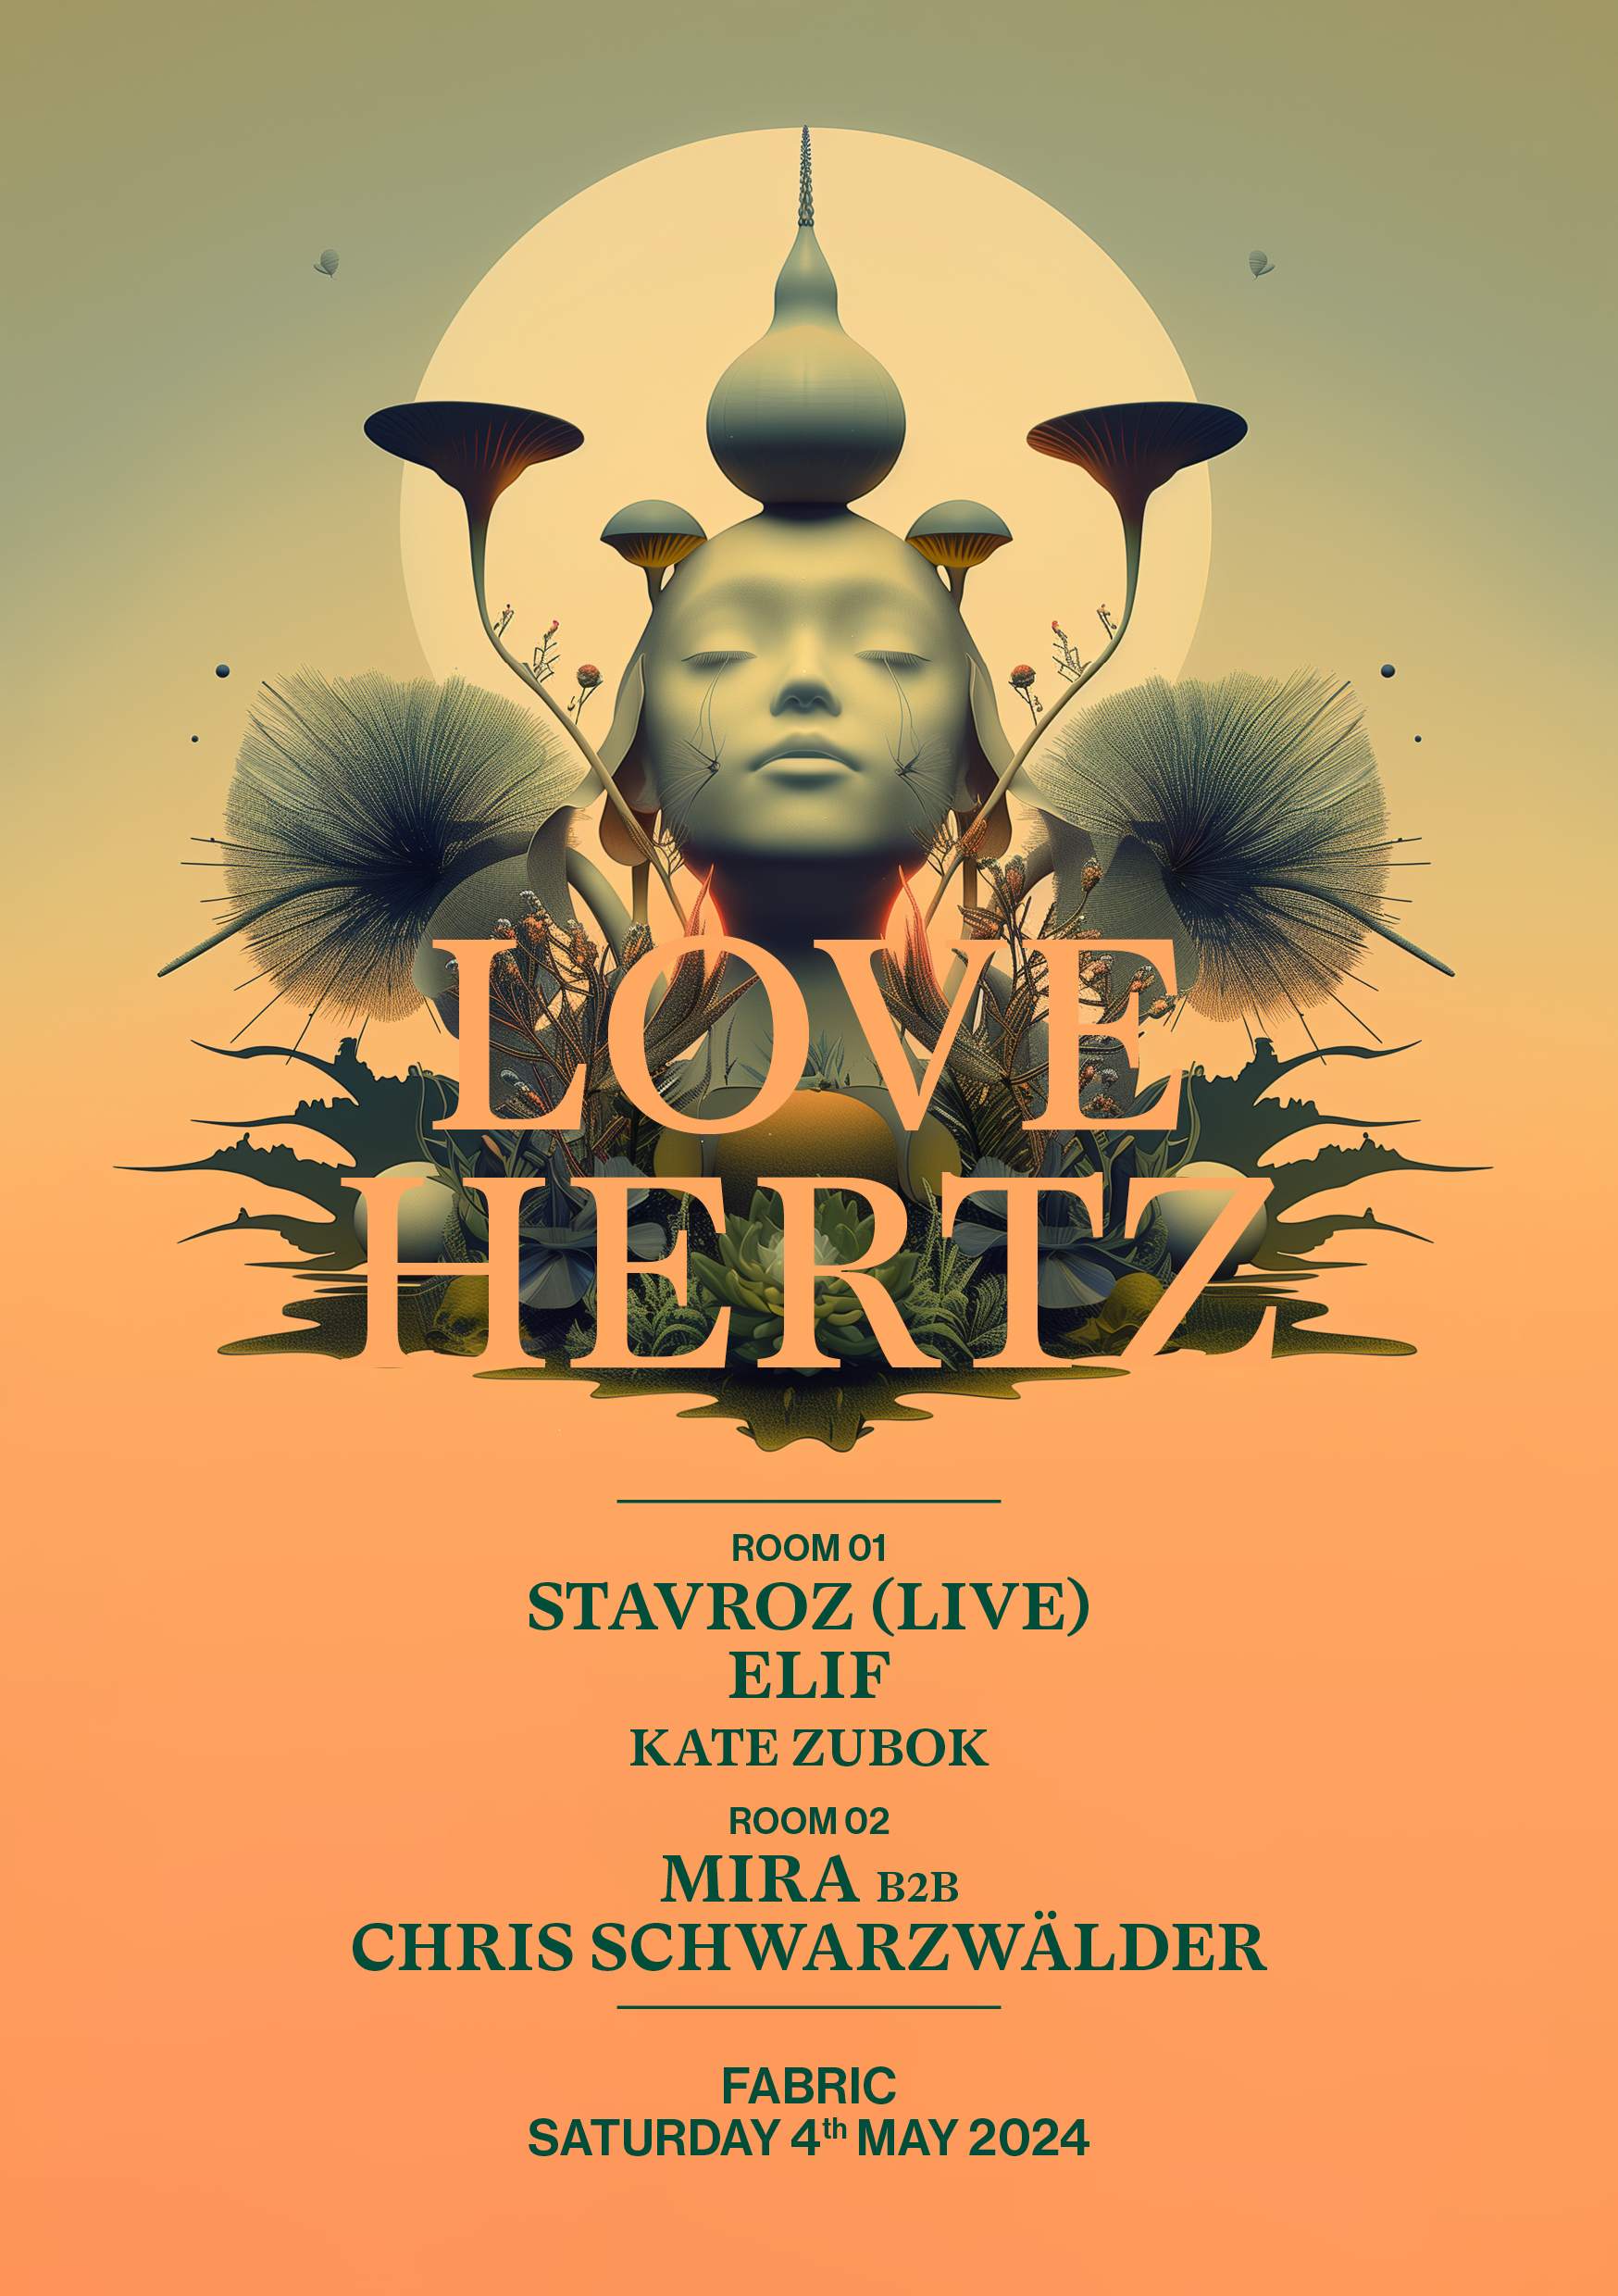 Love Hertz: Stavroz (Live), Elif, Mira, Chris Schwarzwälder, Kate Zubok - フライヤー表